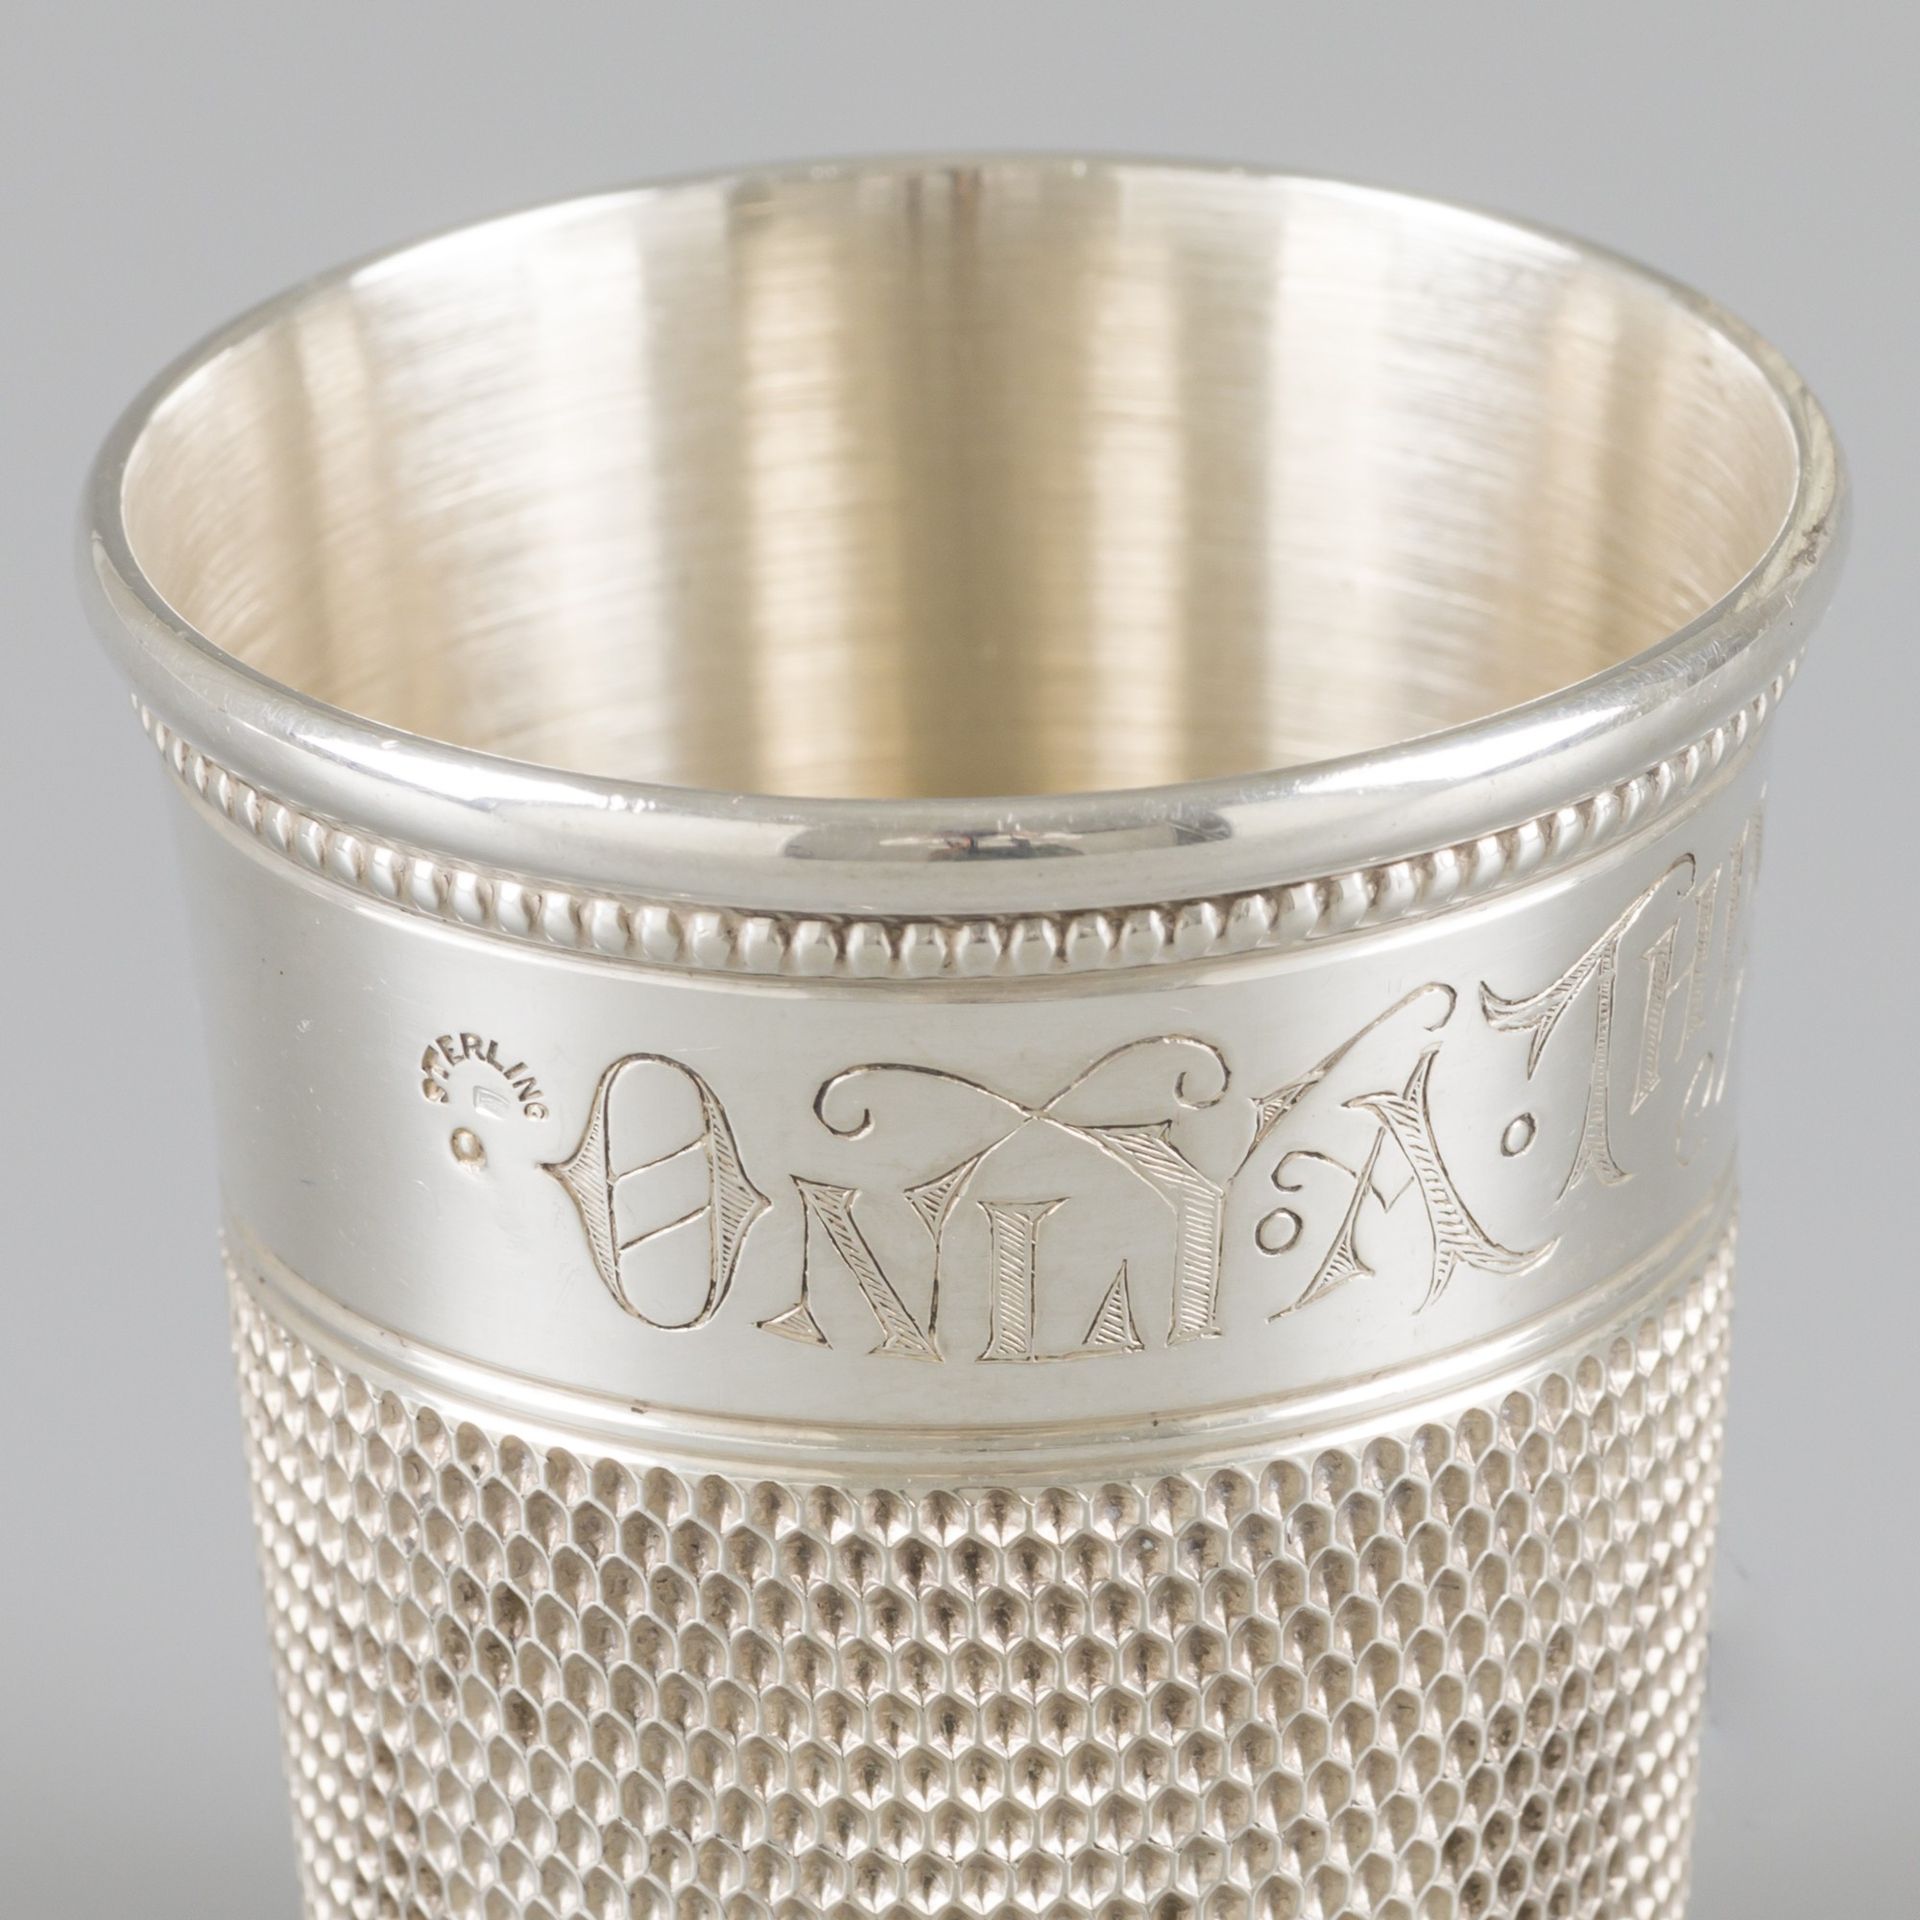 Drink / measuring cup thimble silver. Progettato come un ditale, con testo incis&hellip;